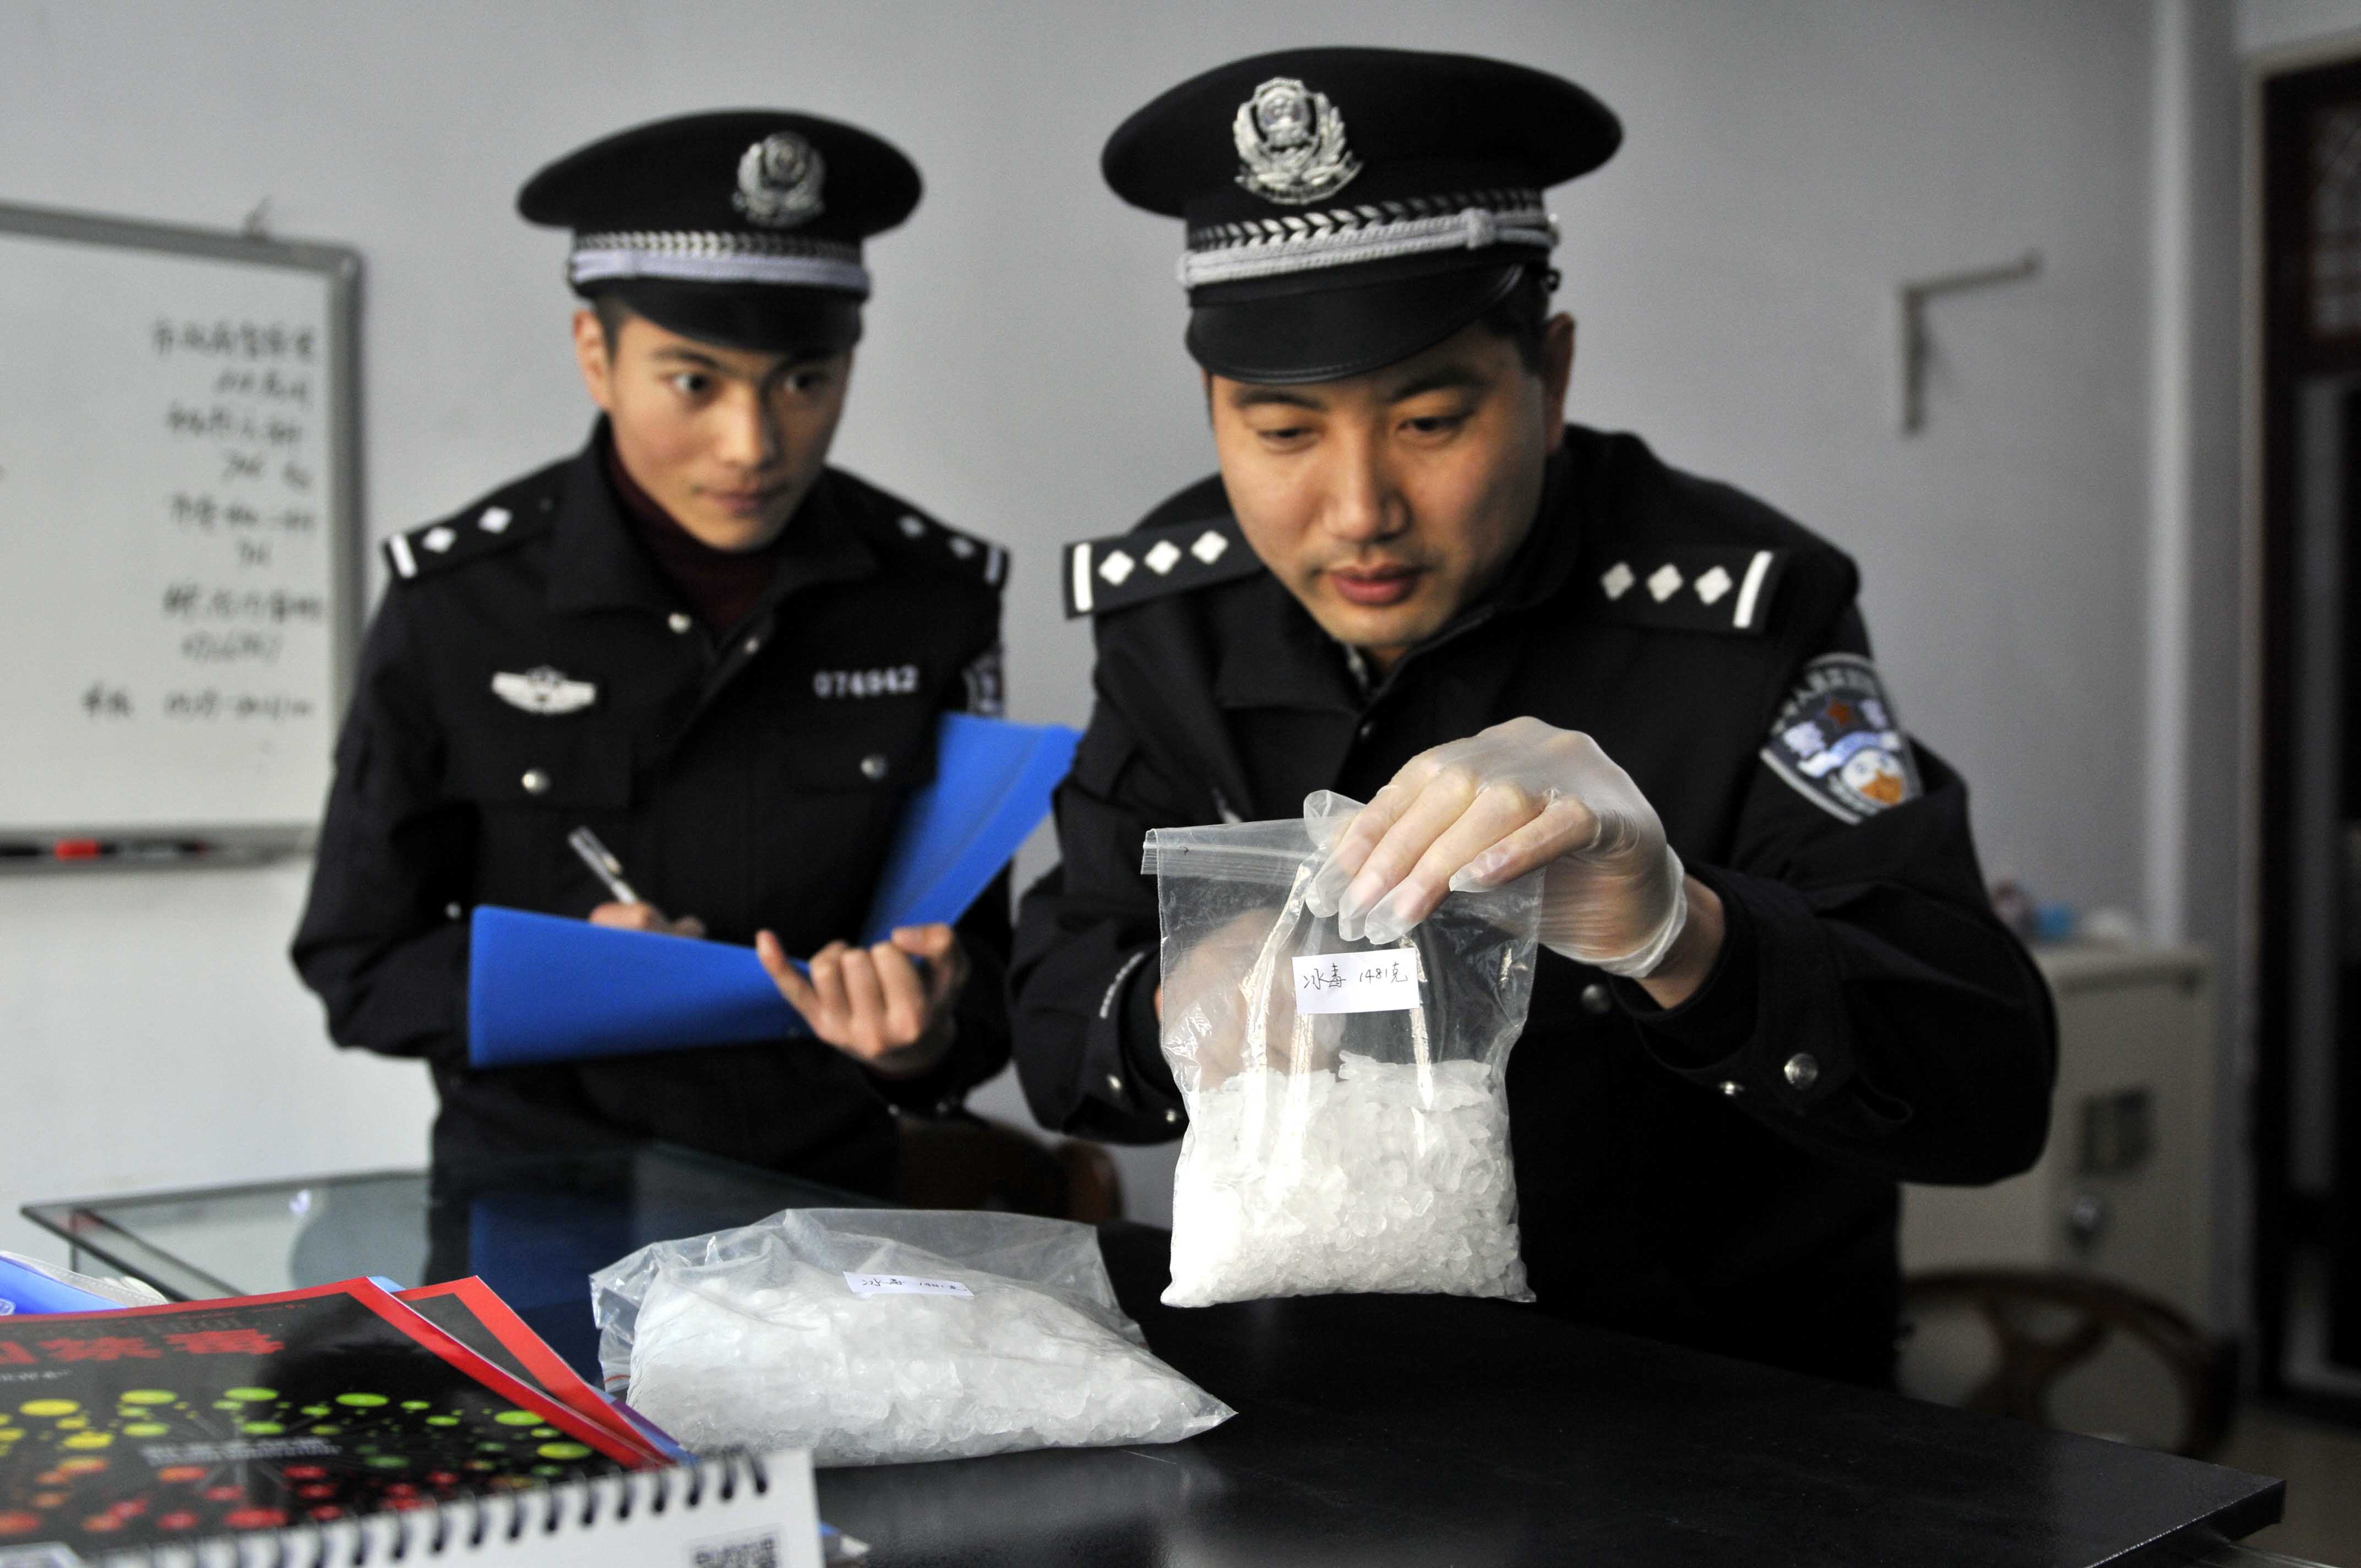 中国缉毒警图片